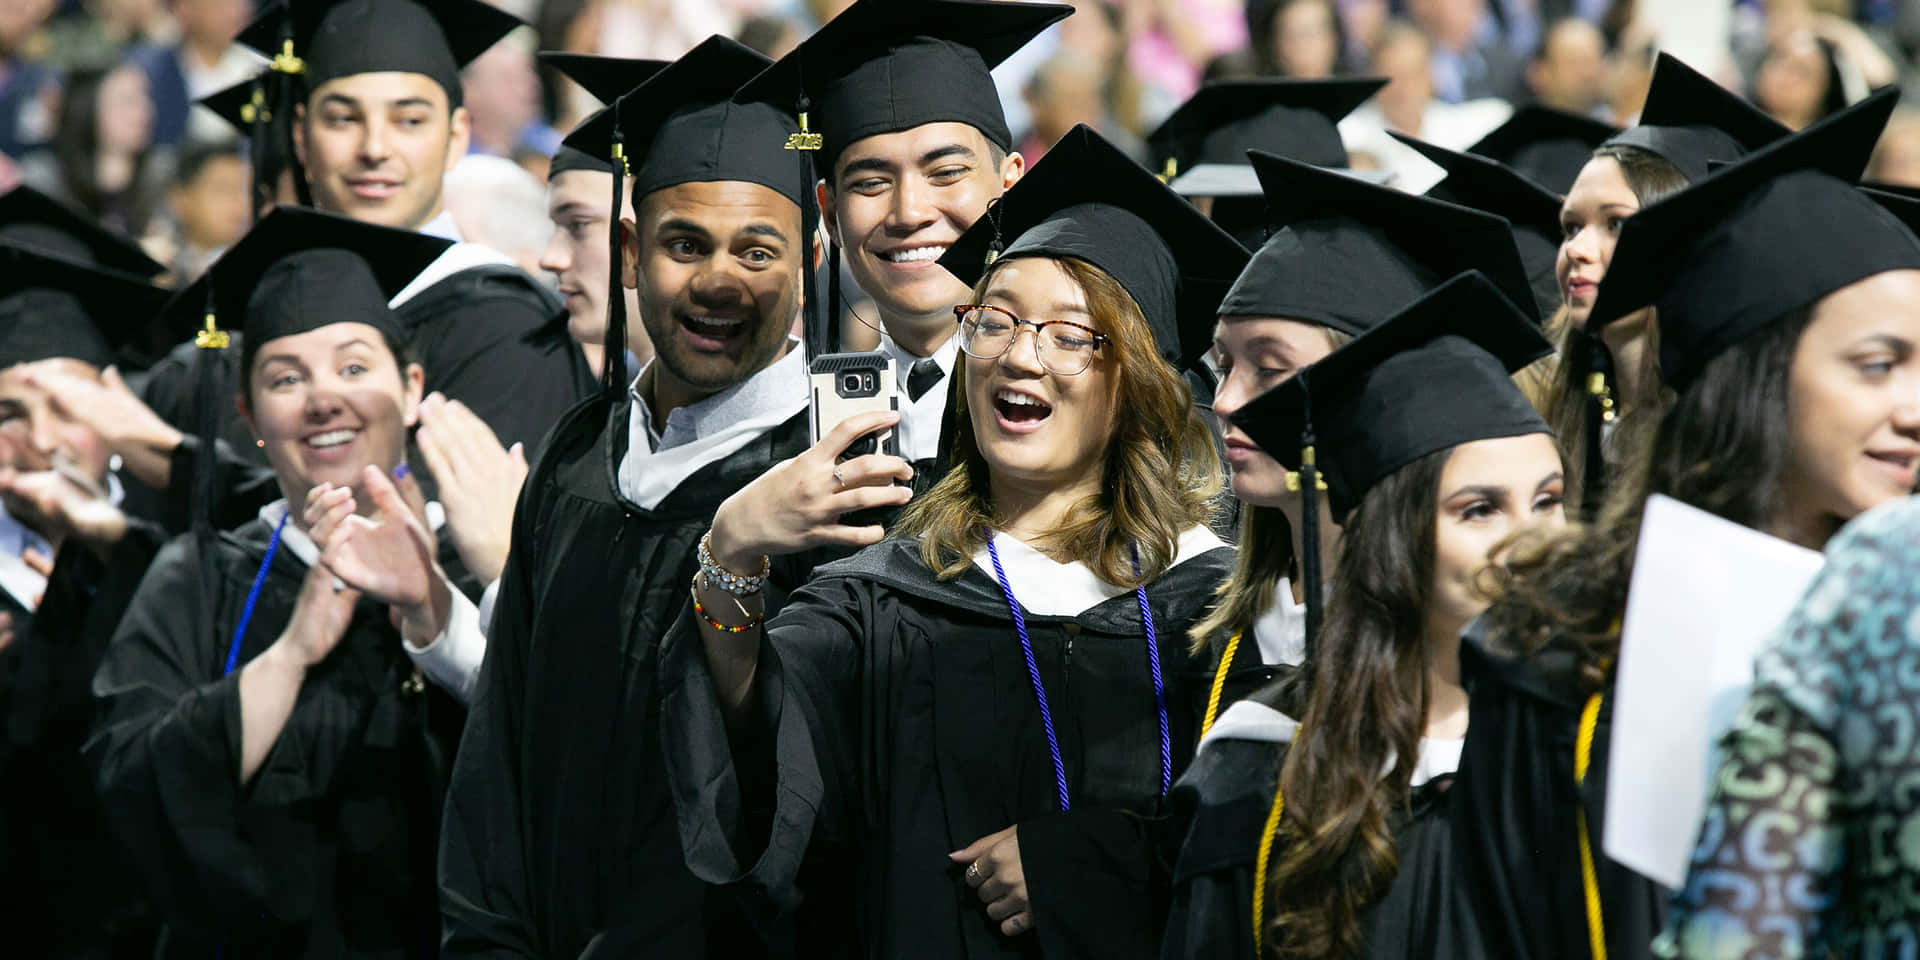 Chicatomándose Una Foto De Grupo En Su Graduación Universitaria.